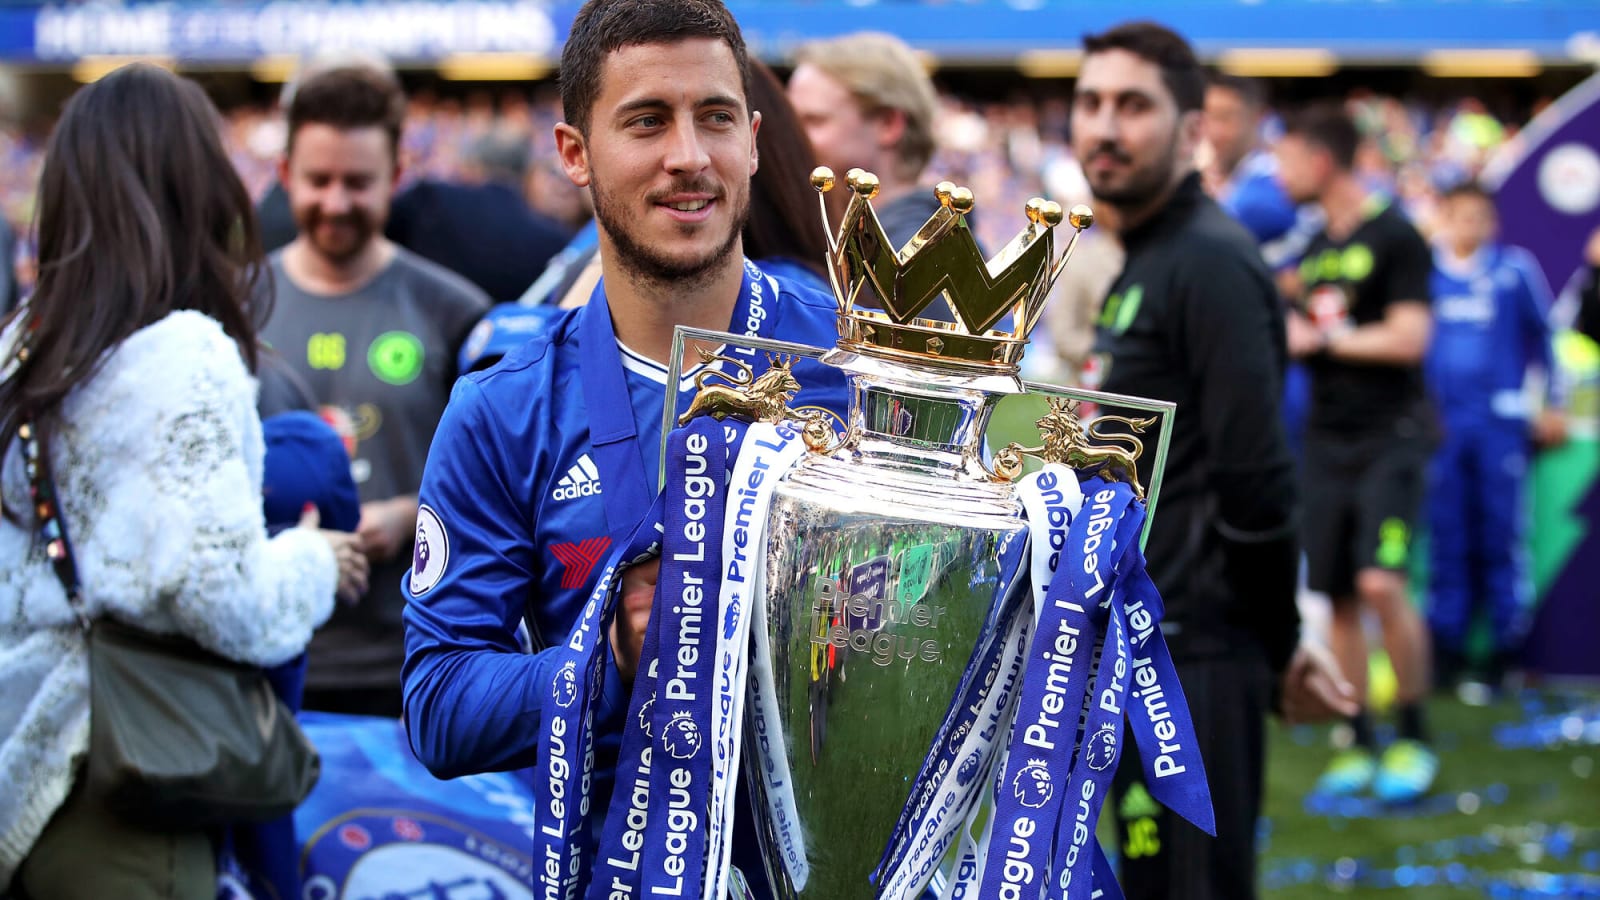 'Tottenham? Nah!' – Chelsea legend Eden Hazard rates current Premier League clubs